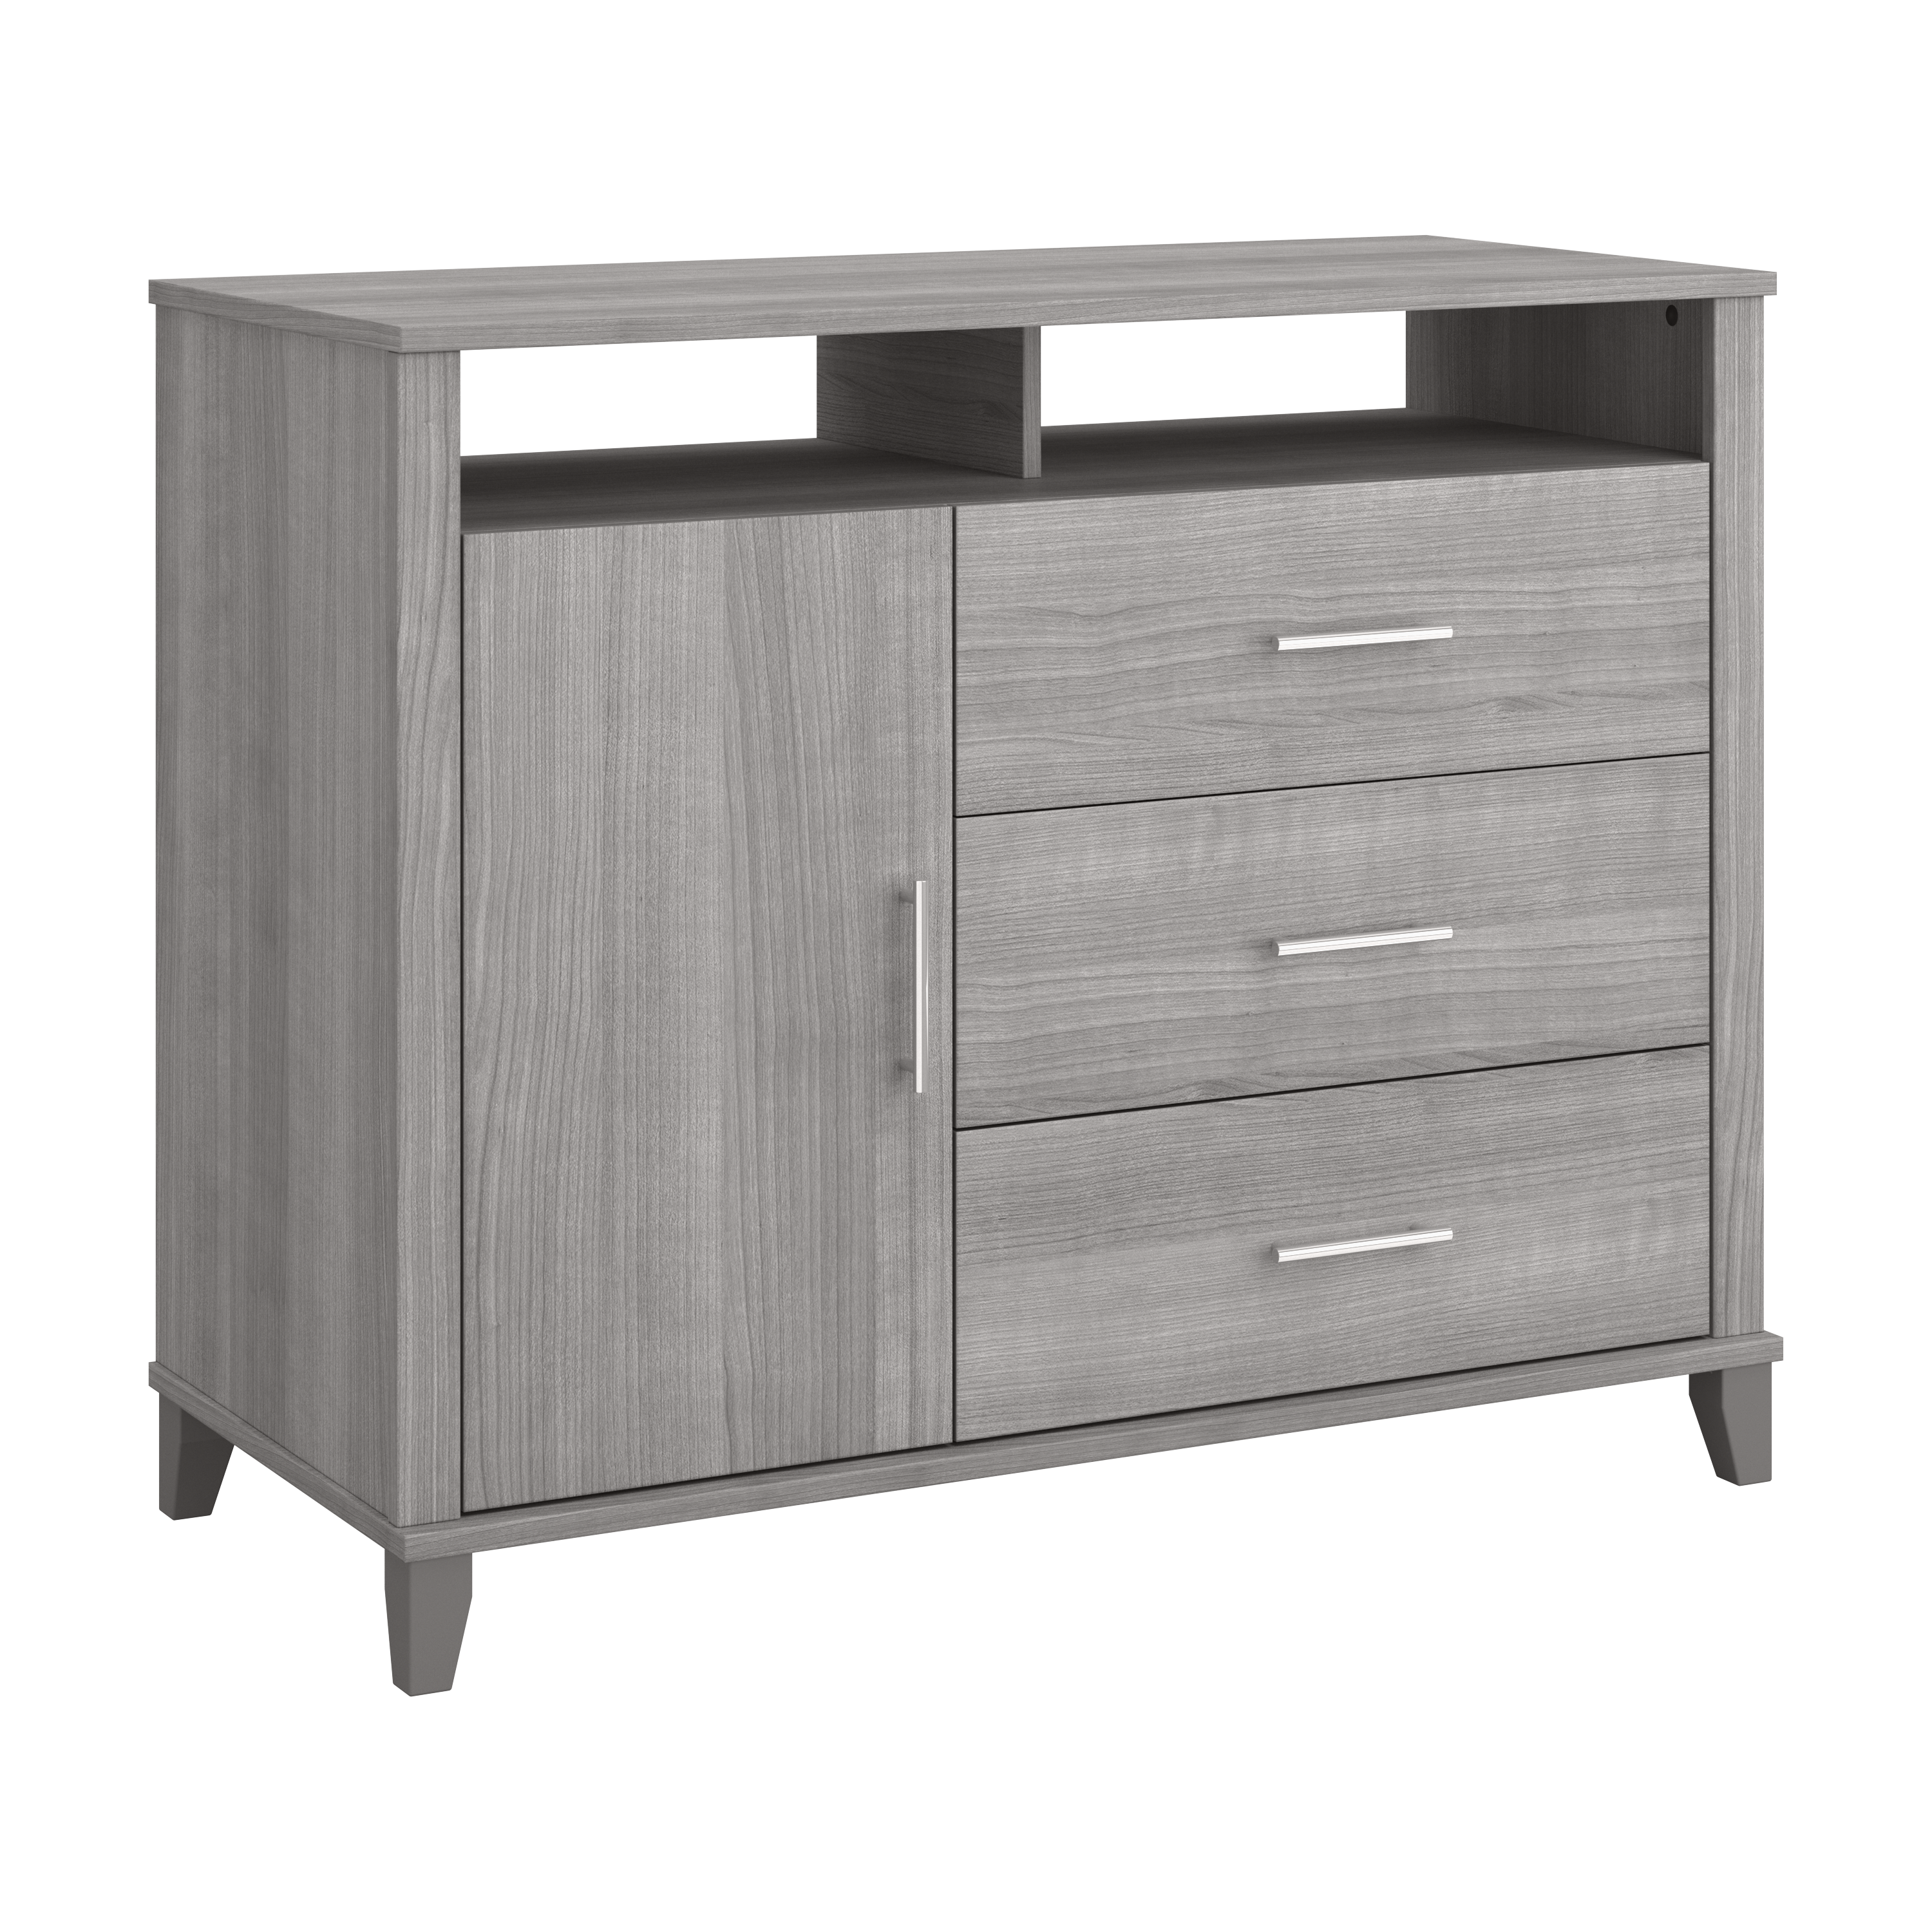 Shop Bush Furniture Somerset 3 Drawer Dresser and Bedroom TV Stand 02 STV148PGK #color_platinum gray